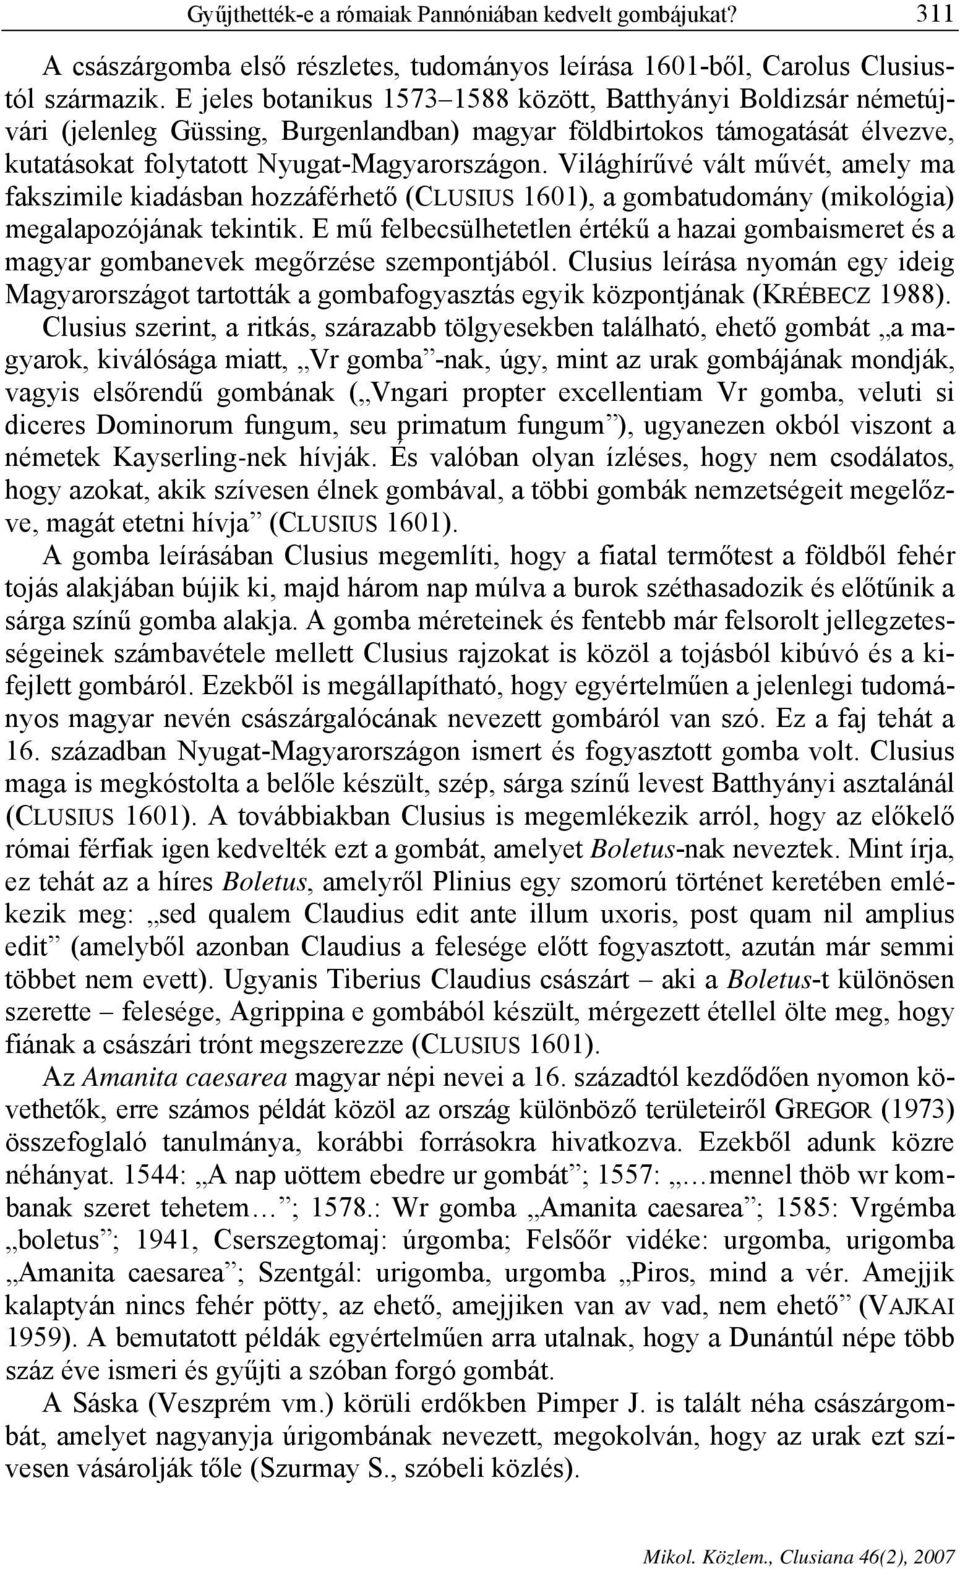 Világhírűvé vált művét, amely ma fakszimile kiadásban hozzáférhető (CLUSIUS 1601), a gombatudomány (mikológia) megalapozójának tekintik.